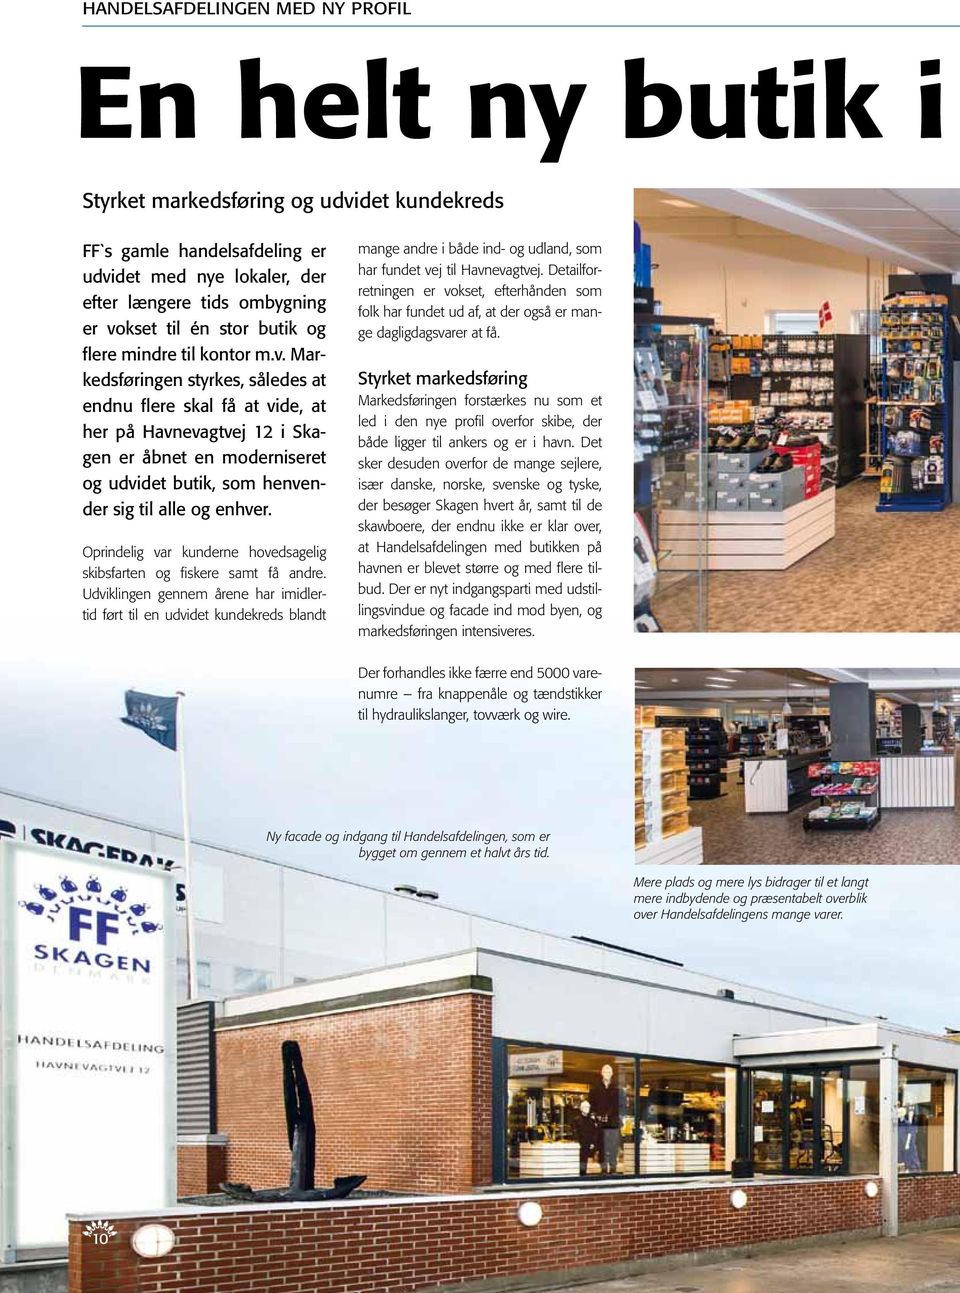 Markedsføringen styrkes, således at endnu flere skal få at vide, at her på Havnevagtvej 12 i Skagen er åbnet en moderniseret og udvidet butik, som henvender sig til alle og enhver.